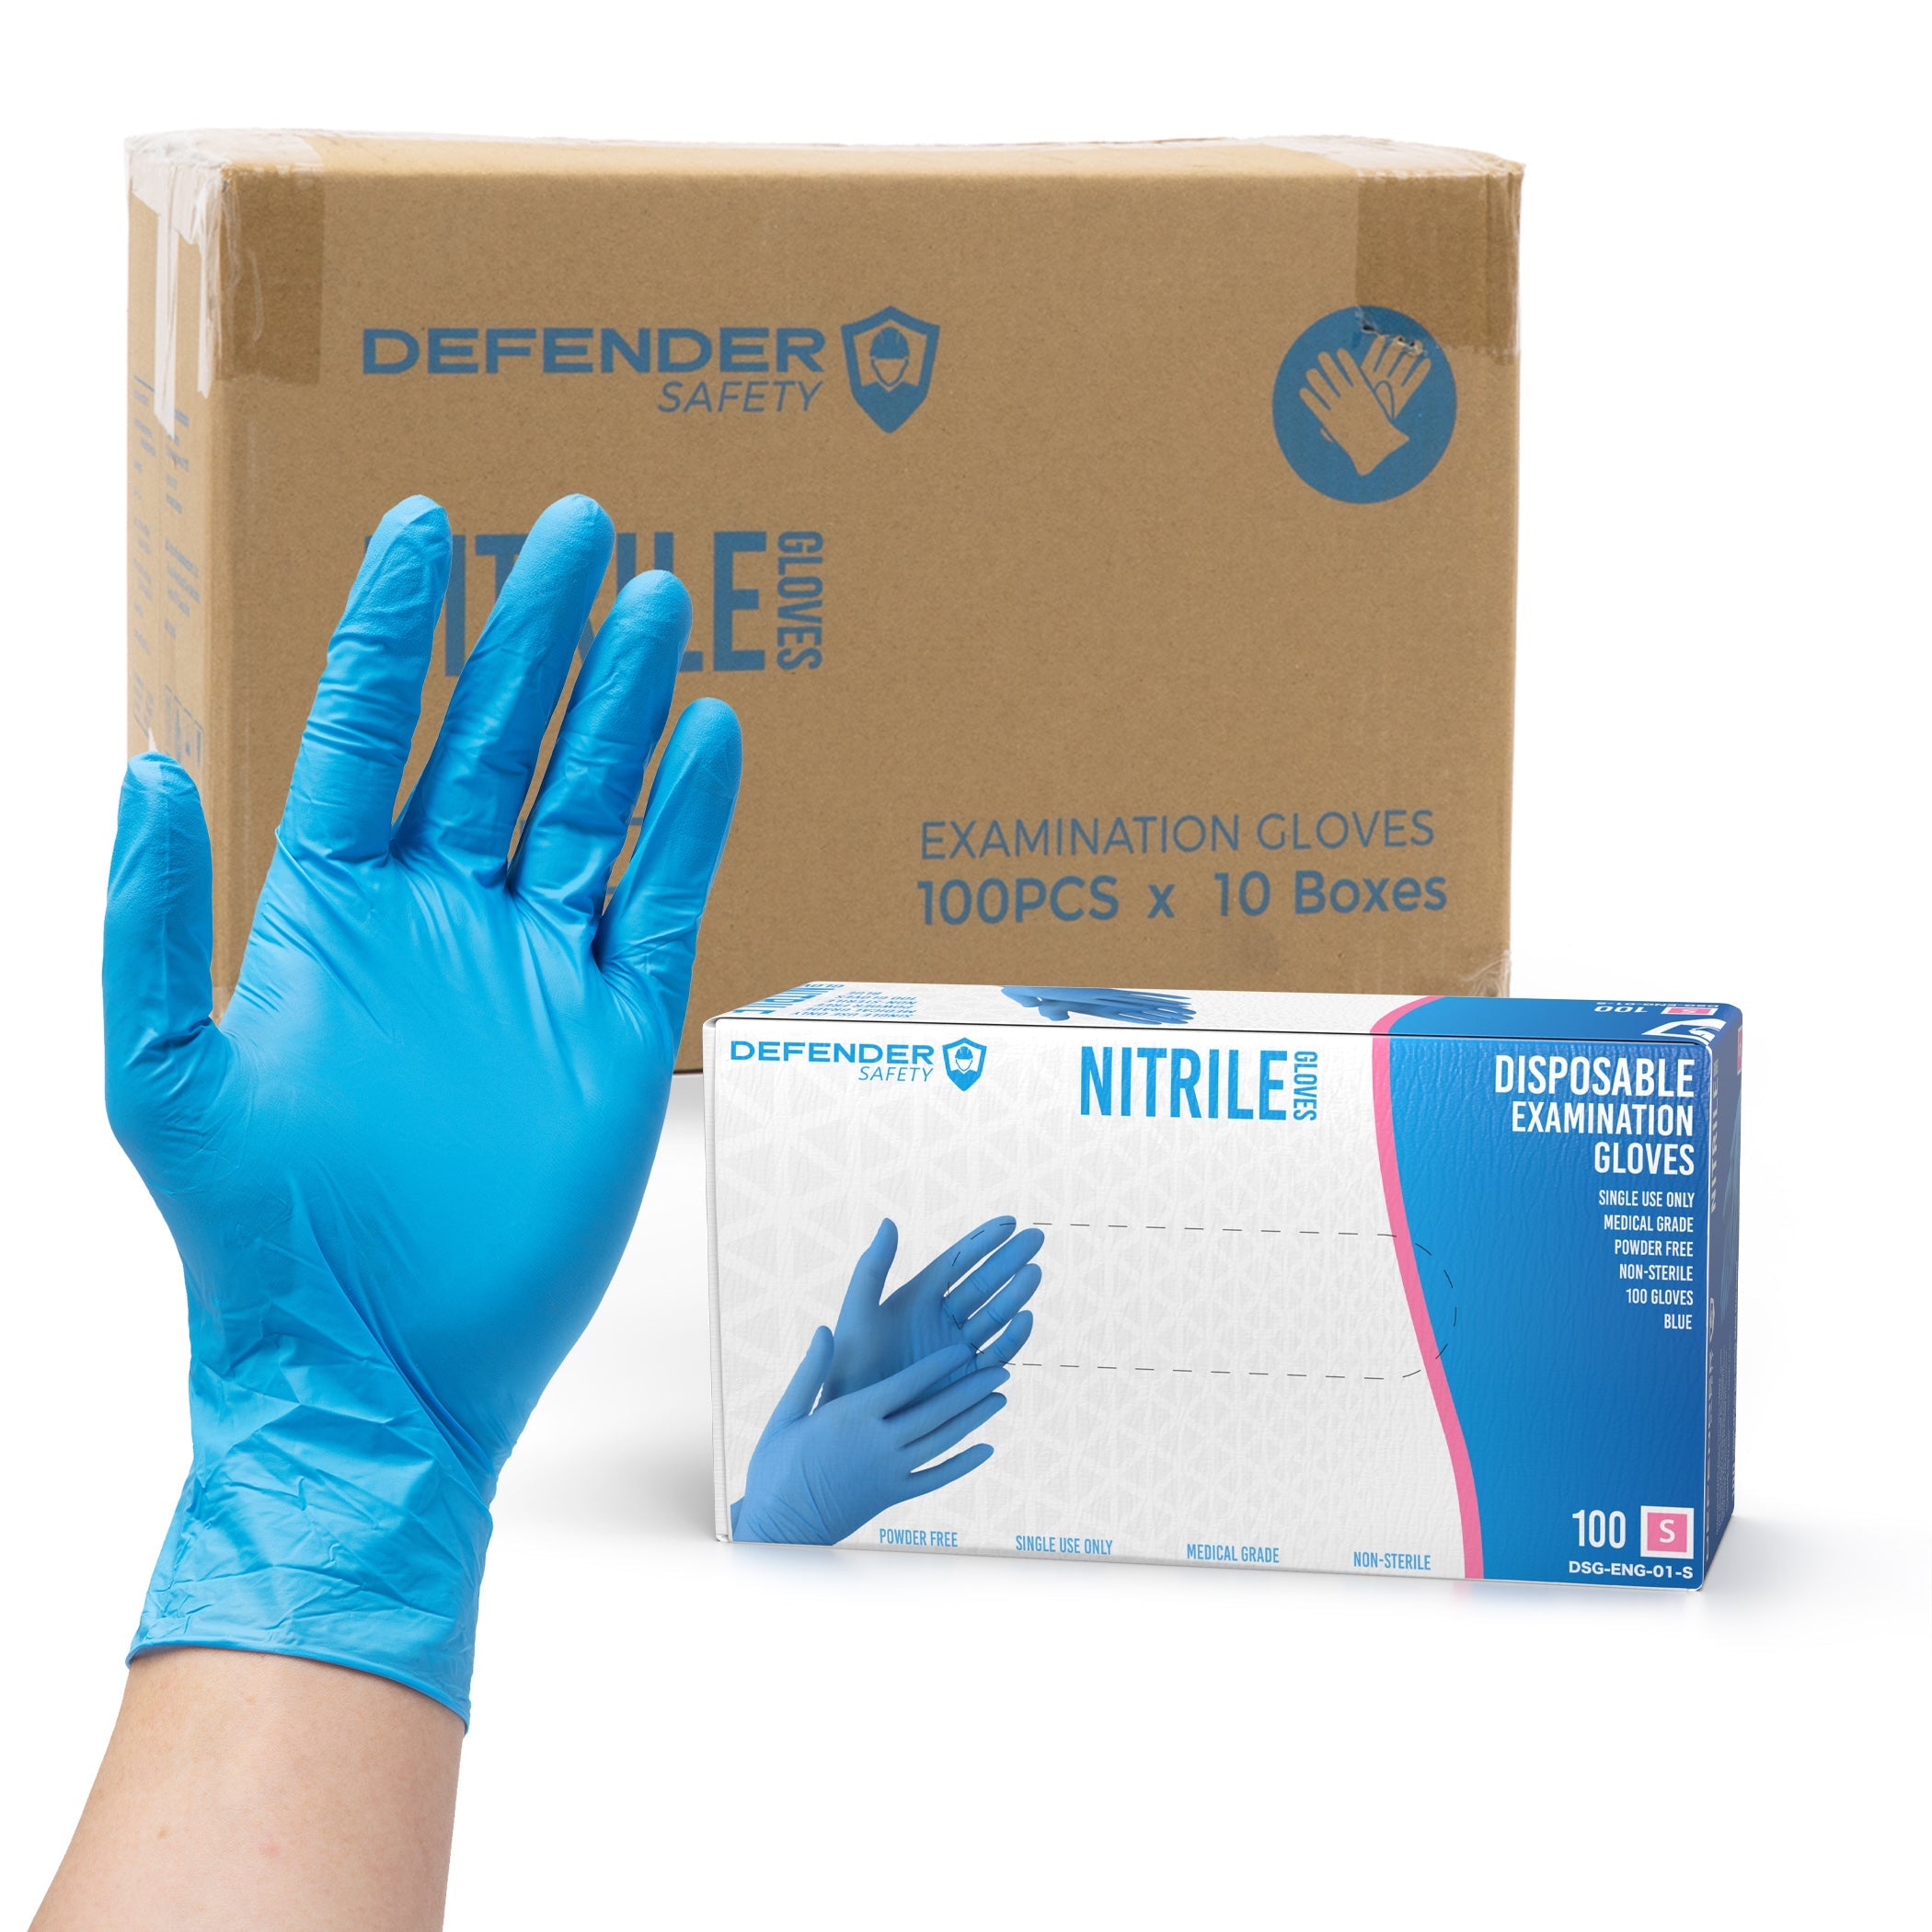 https://defendersafety.com/cdn/shop/products/35-mil-blue-nitrile-gloves-medical-grade-35-mil-powder-free-blue-312054.jpg?v=1690825028&width=2100